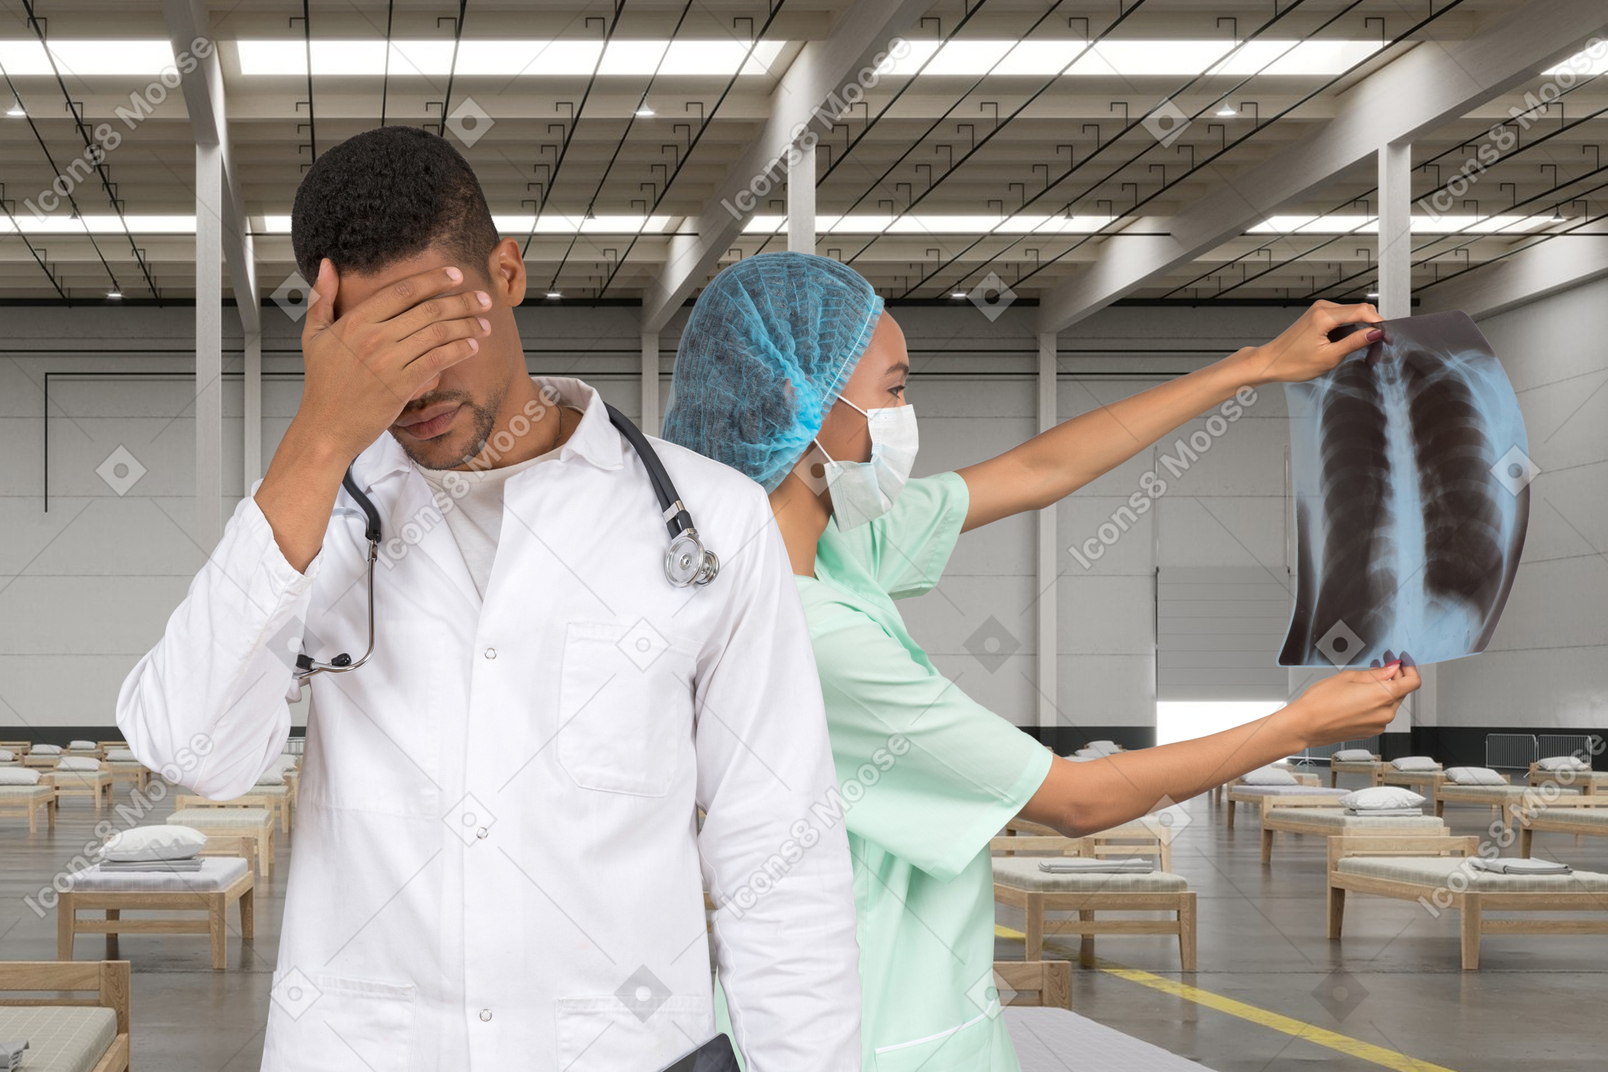 一位女医生正在看 x 光片，站在一位手掌心的男医生旁边